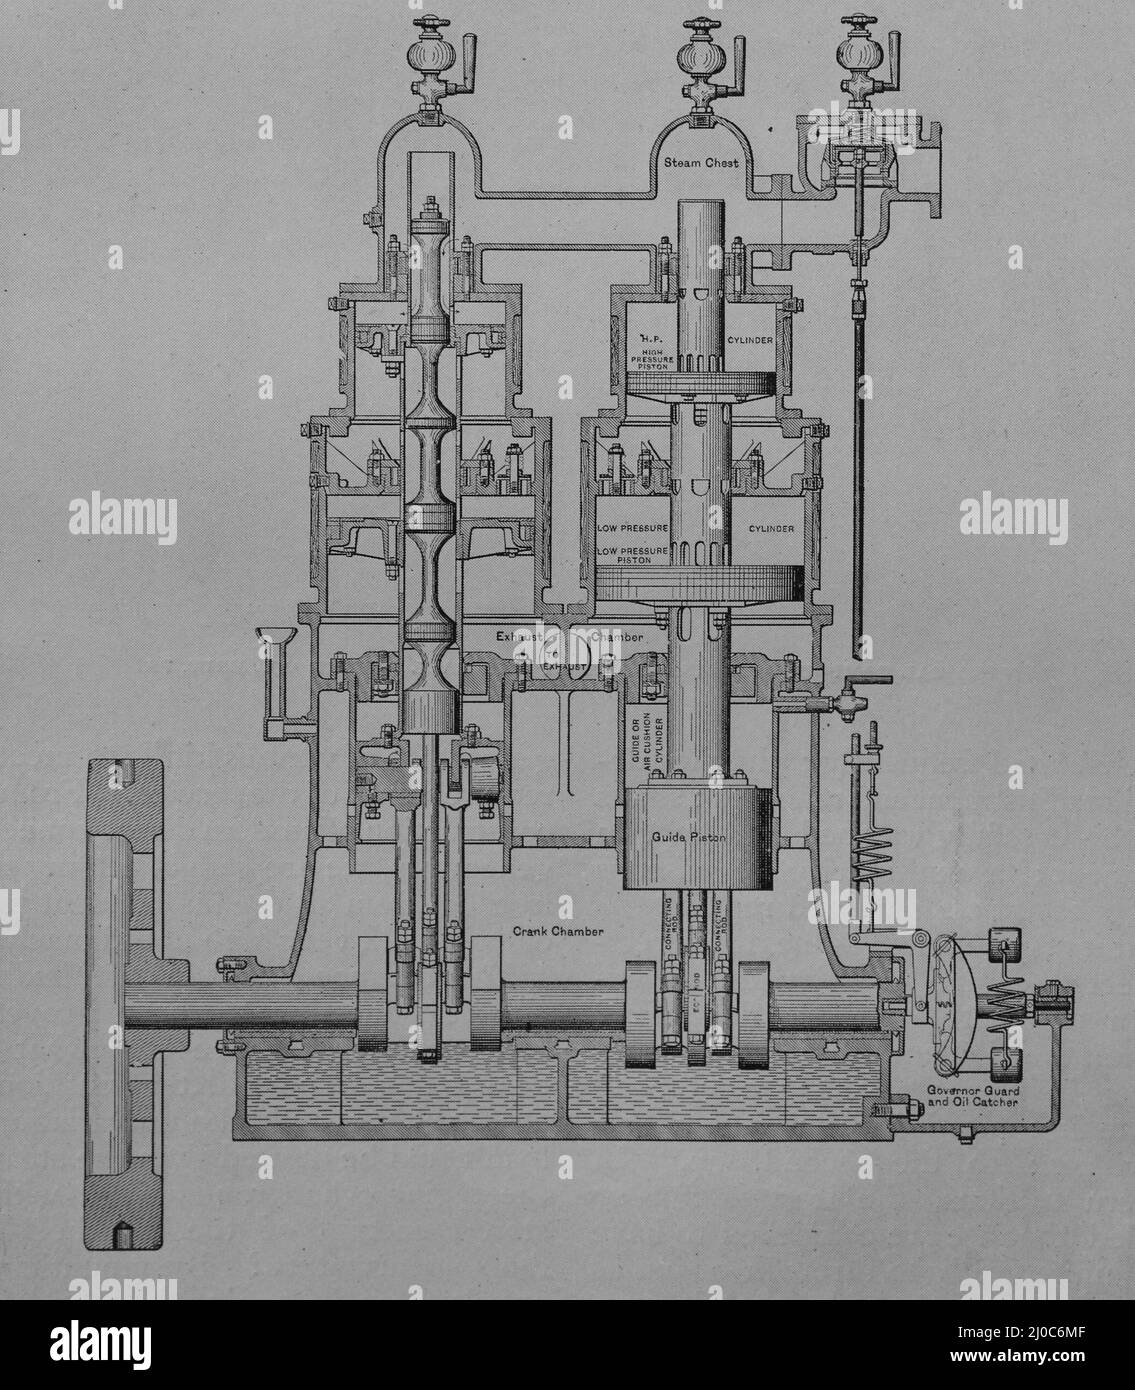 Sezione del motore composto a valvole centrali Willans. Illustrazione in bianco e nero; Foto Stock